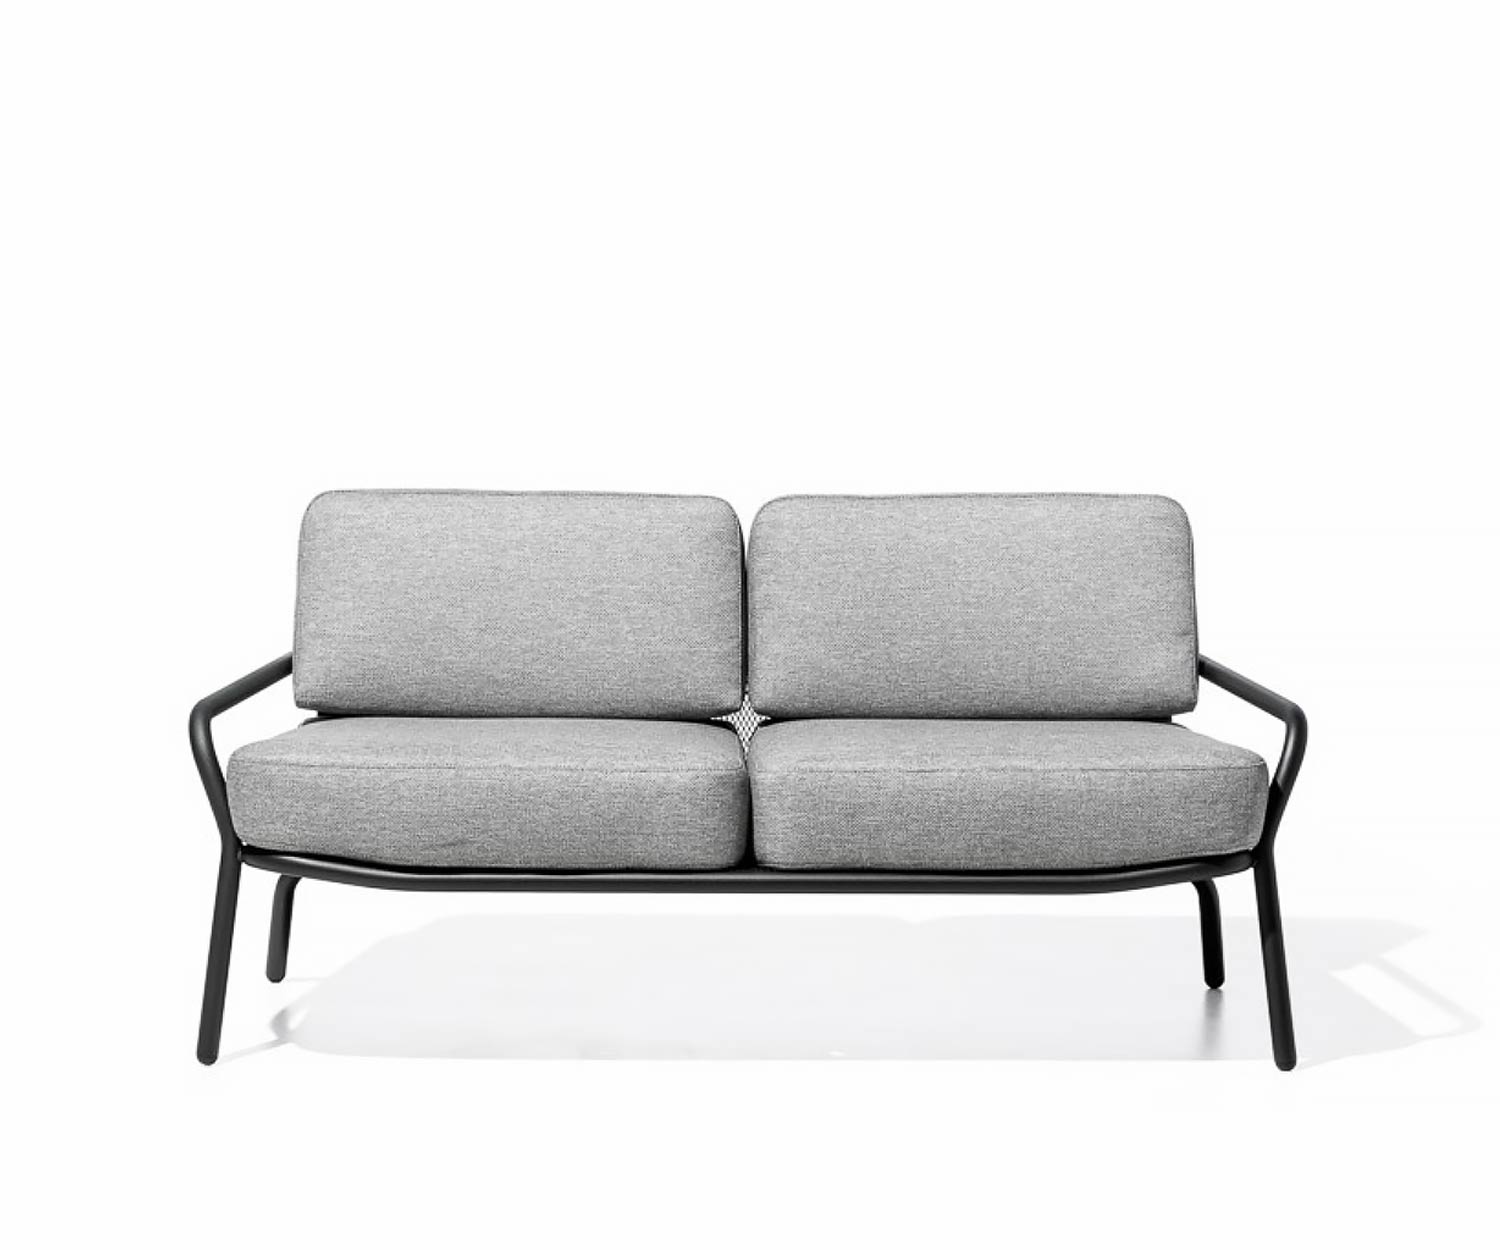 Exclusieve Todus Starling design loungebank met witte stoffen bekleding als 2-zitter